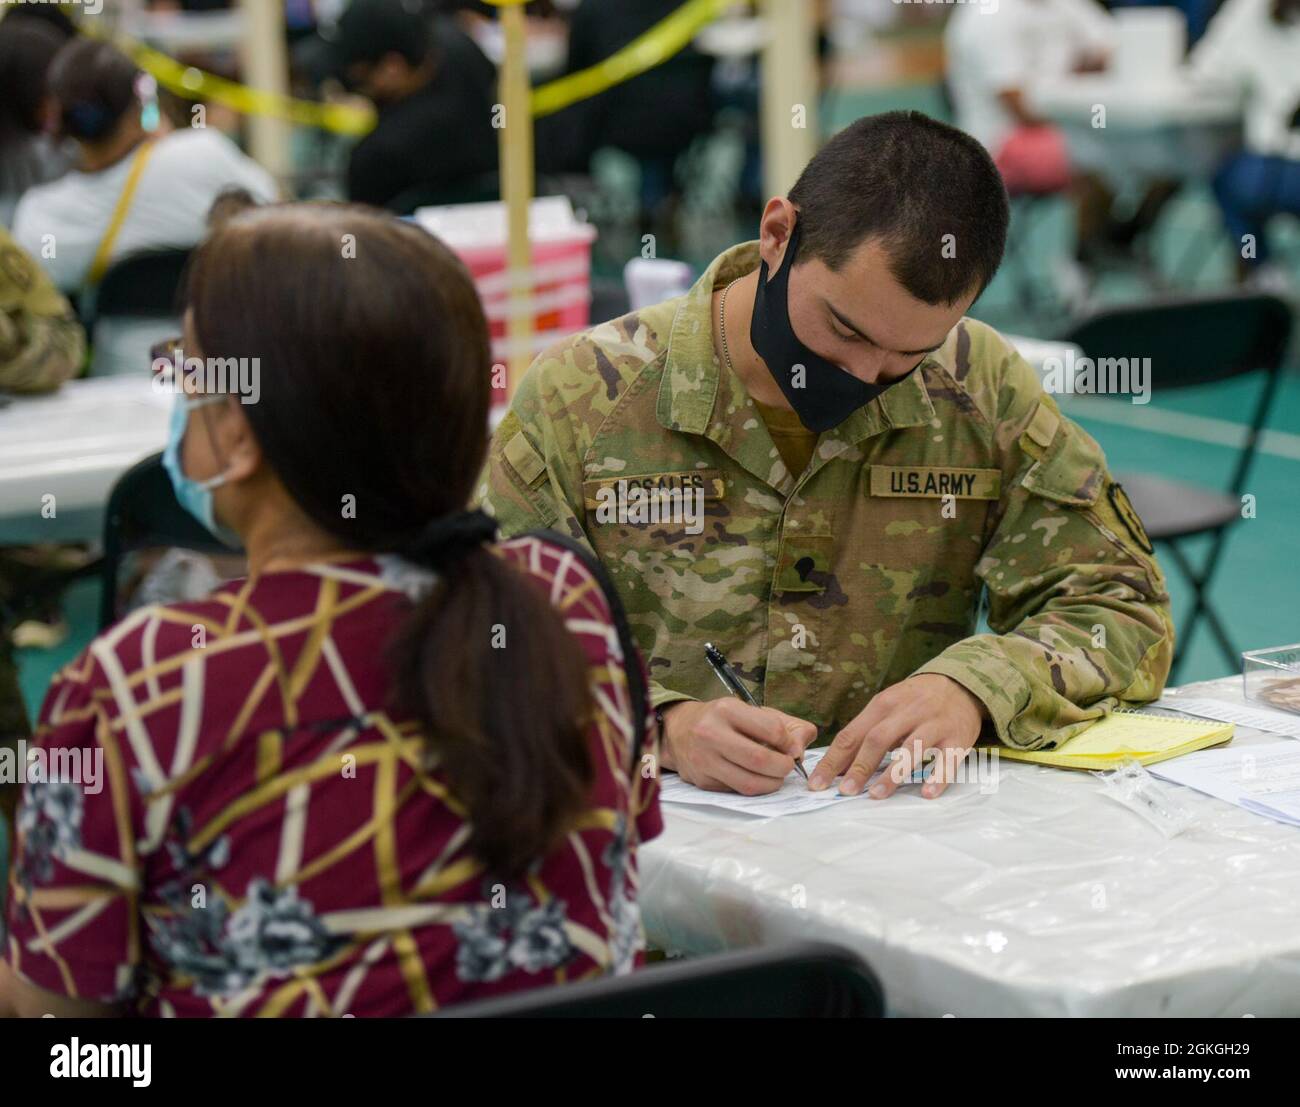 MANGILAO, Guam (16. April 2021) – SPC. Julio Rosales, ein Kampfmediziner, der der 25. Infanterie-Abteilung zugewiesen ist, überprüft die Patienteninformationen, bevor er einen COVID-19-Impfstoff verabreicht, um das COVID-19-Impfteam des Gesundheitsministeriums von Guam (DPHSS) in einer Impfklinik im Field House der Universität von Guam Calvo zu unterstützen. Das US-amerikanische Indo-Pacific Command über die US Army Pacific ist weiterhin bestrebt, die Federal Emergency Management Agency im Rahmen der Reaktion der gesamten Regierung auf COVID-19 weiterhin flexibel zu unterstützen. Stockfoto